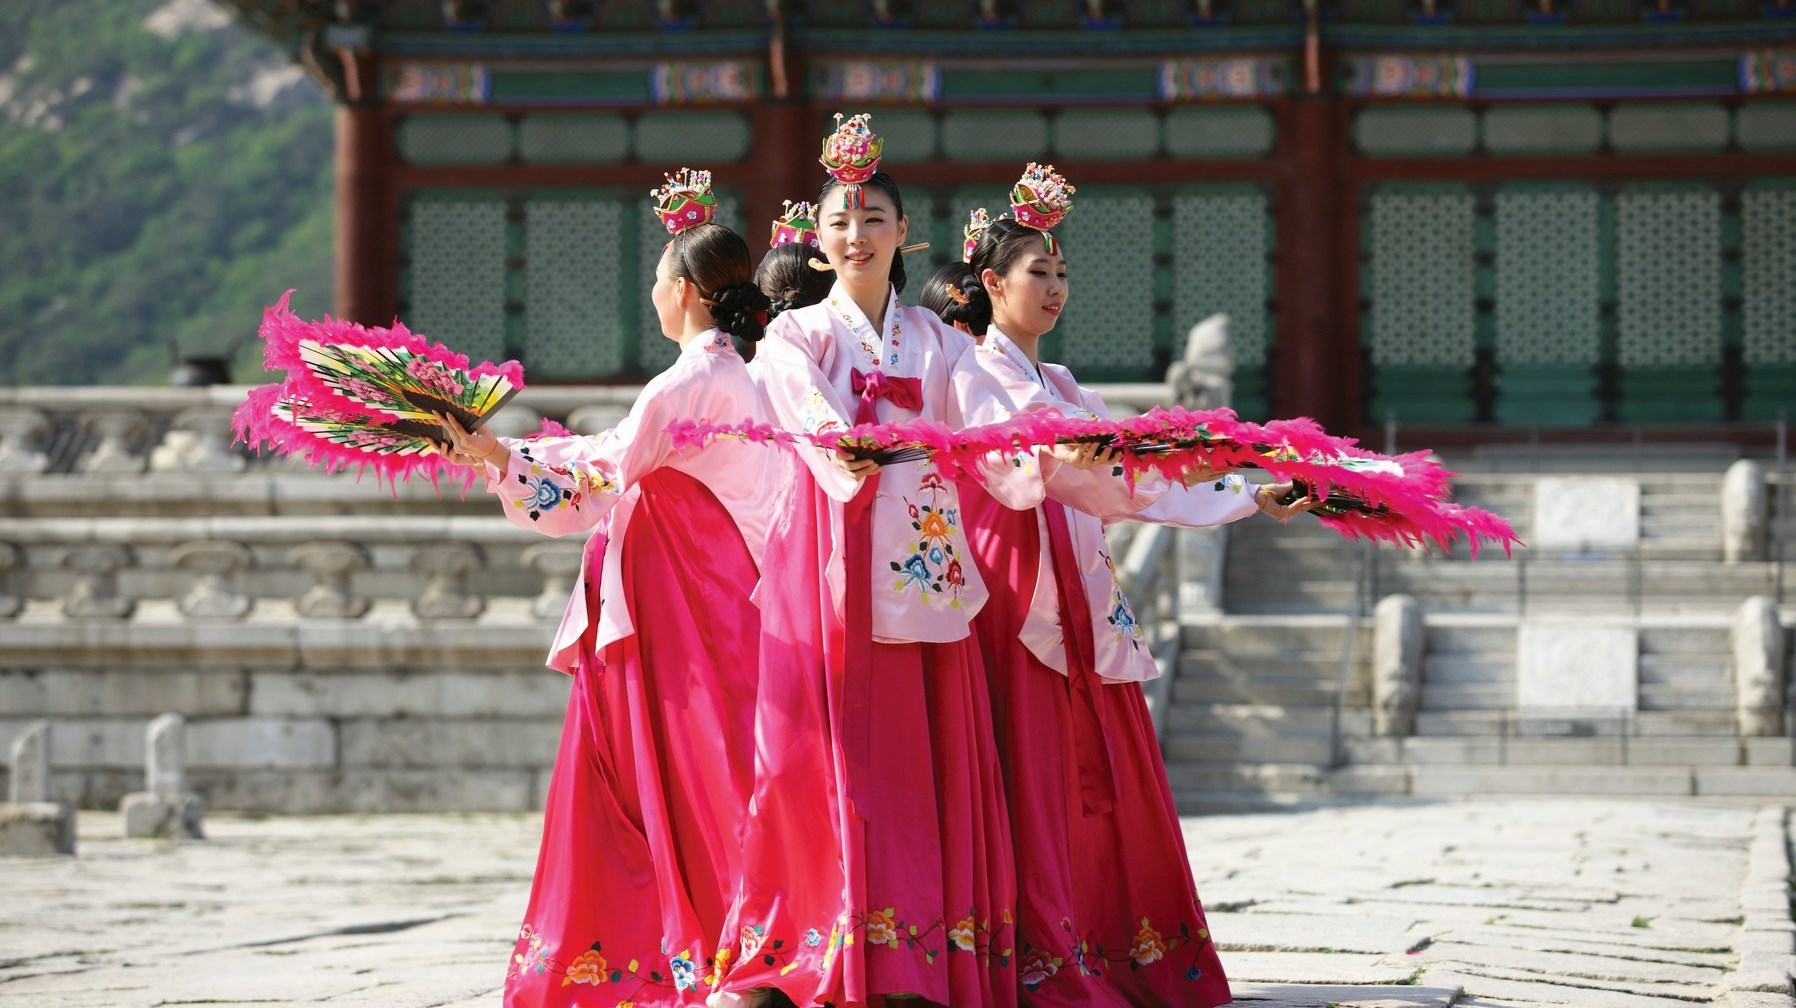 عادات وتقاليد تتشابه بين الكوريين والعرب.. هذه أبرزها
